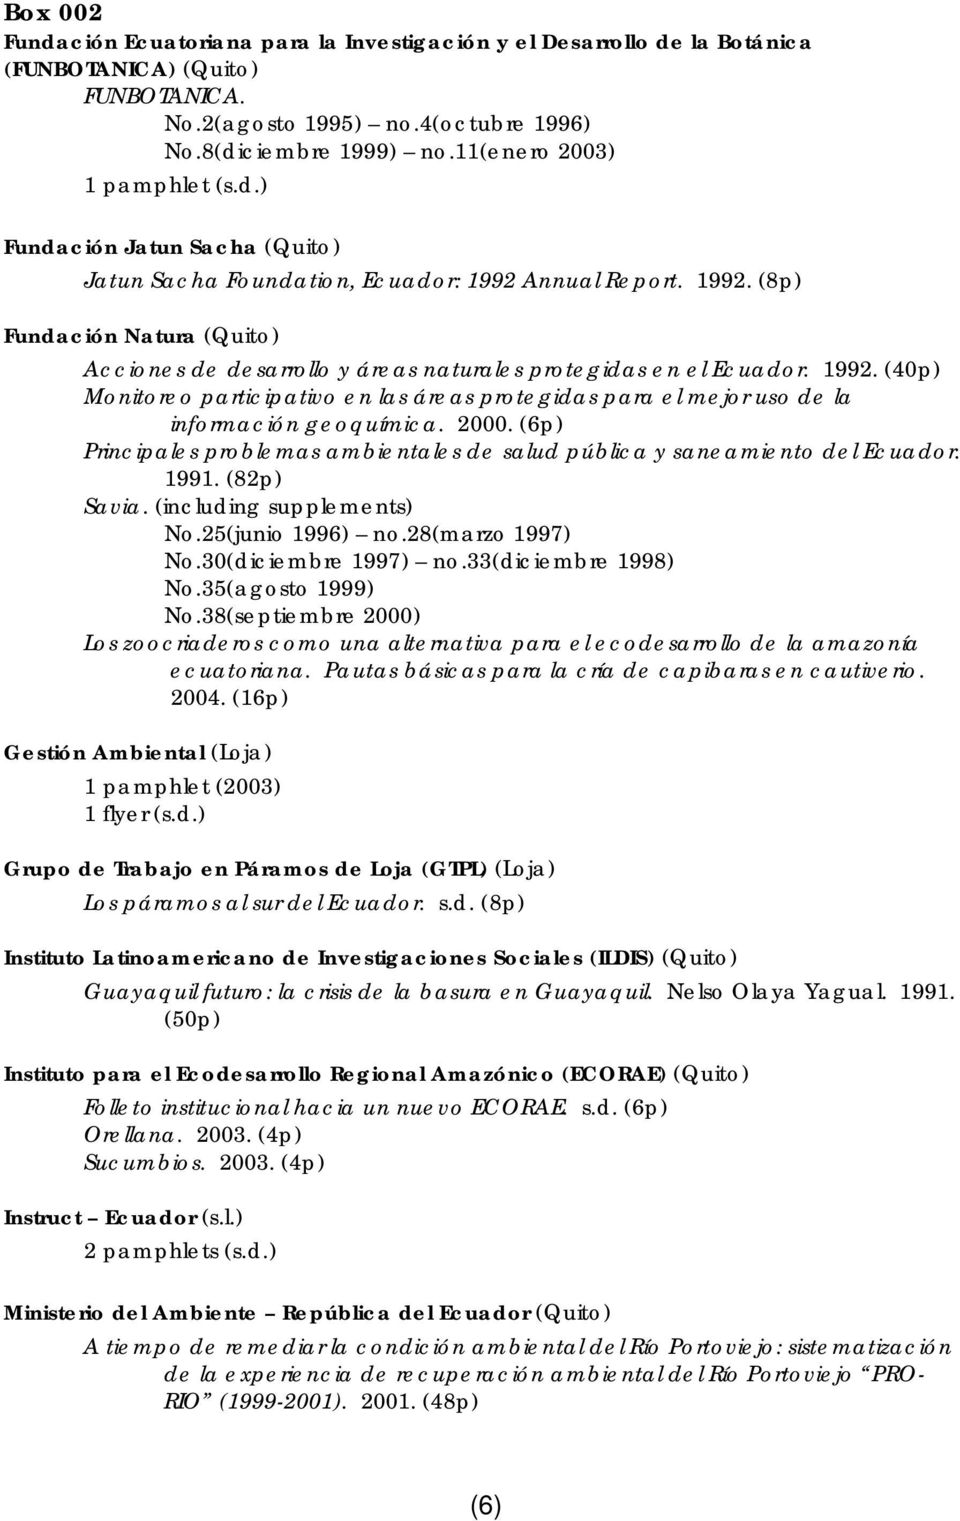 1992. (40p) Monitoreo participativo en las áreas protegidas para el mejor uso de la información geoquímica. 2000. (6p) Principales problemas ambientales de salud pública y saneamiento del Ecuador.